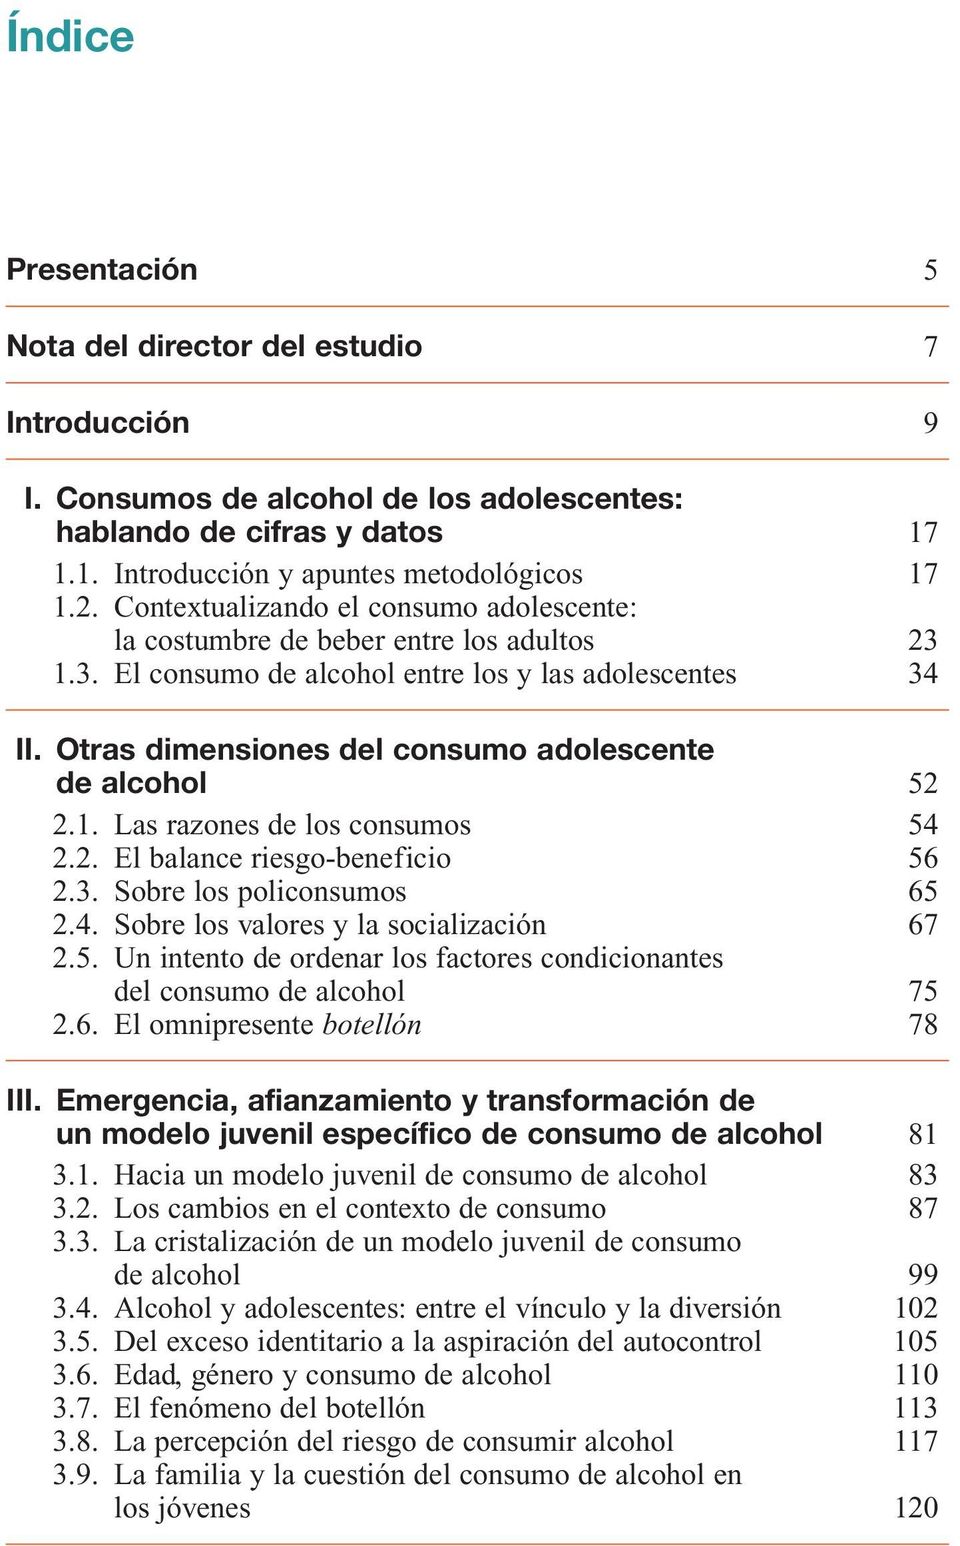 Otras dimensiones del consumo adolescente de alcohol 52 2.1. Las razones de los consumos 54 2.2. El balance riesgo-beneficio 56 2.3. Sobre los policonsumos 65 2.4. Sobre los valores y la socialización 67 2.